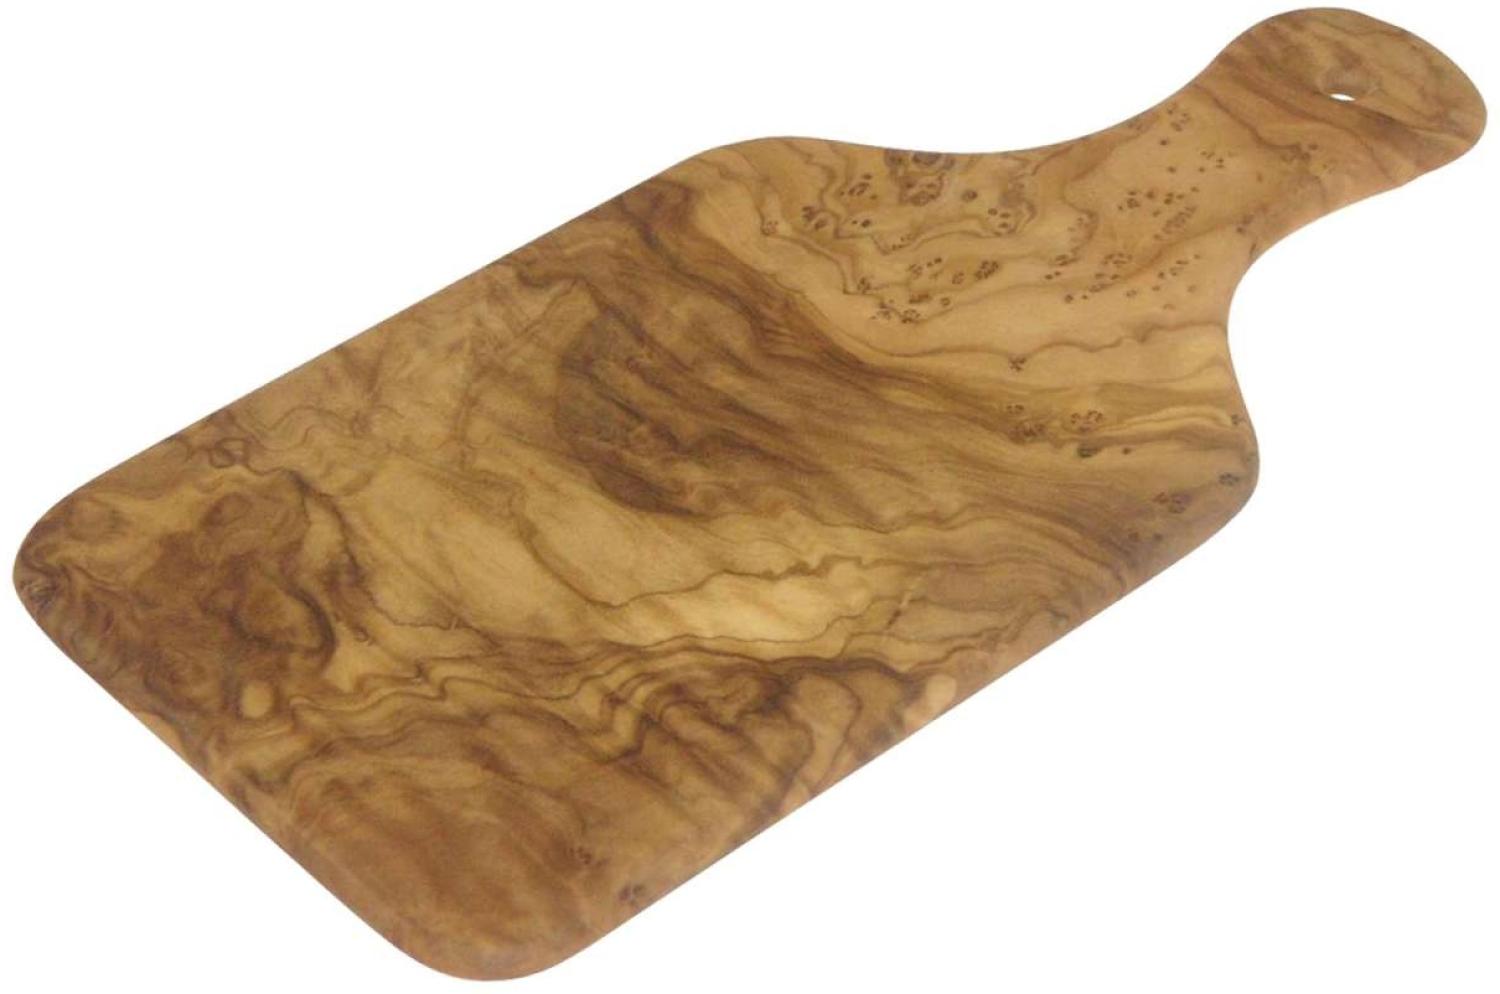 Pure Nature Holz Schneidebrett mit Griff aus feinsten Olivenholz Schneidbrett mit Griff, Olivenholz, 26 x 12 cm Bild 1